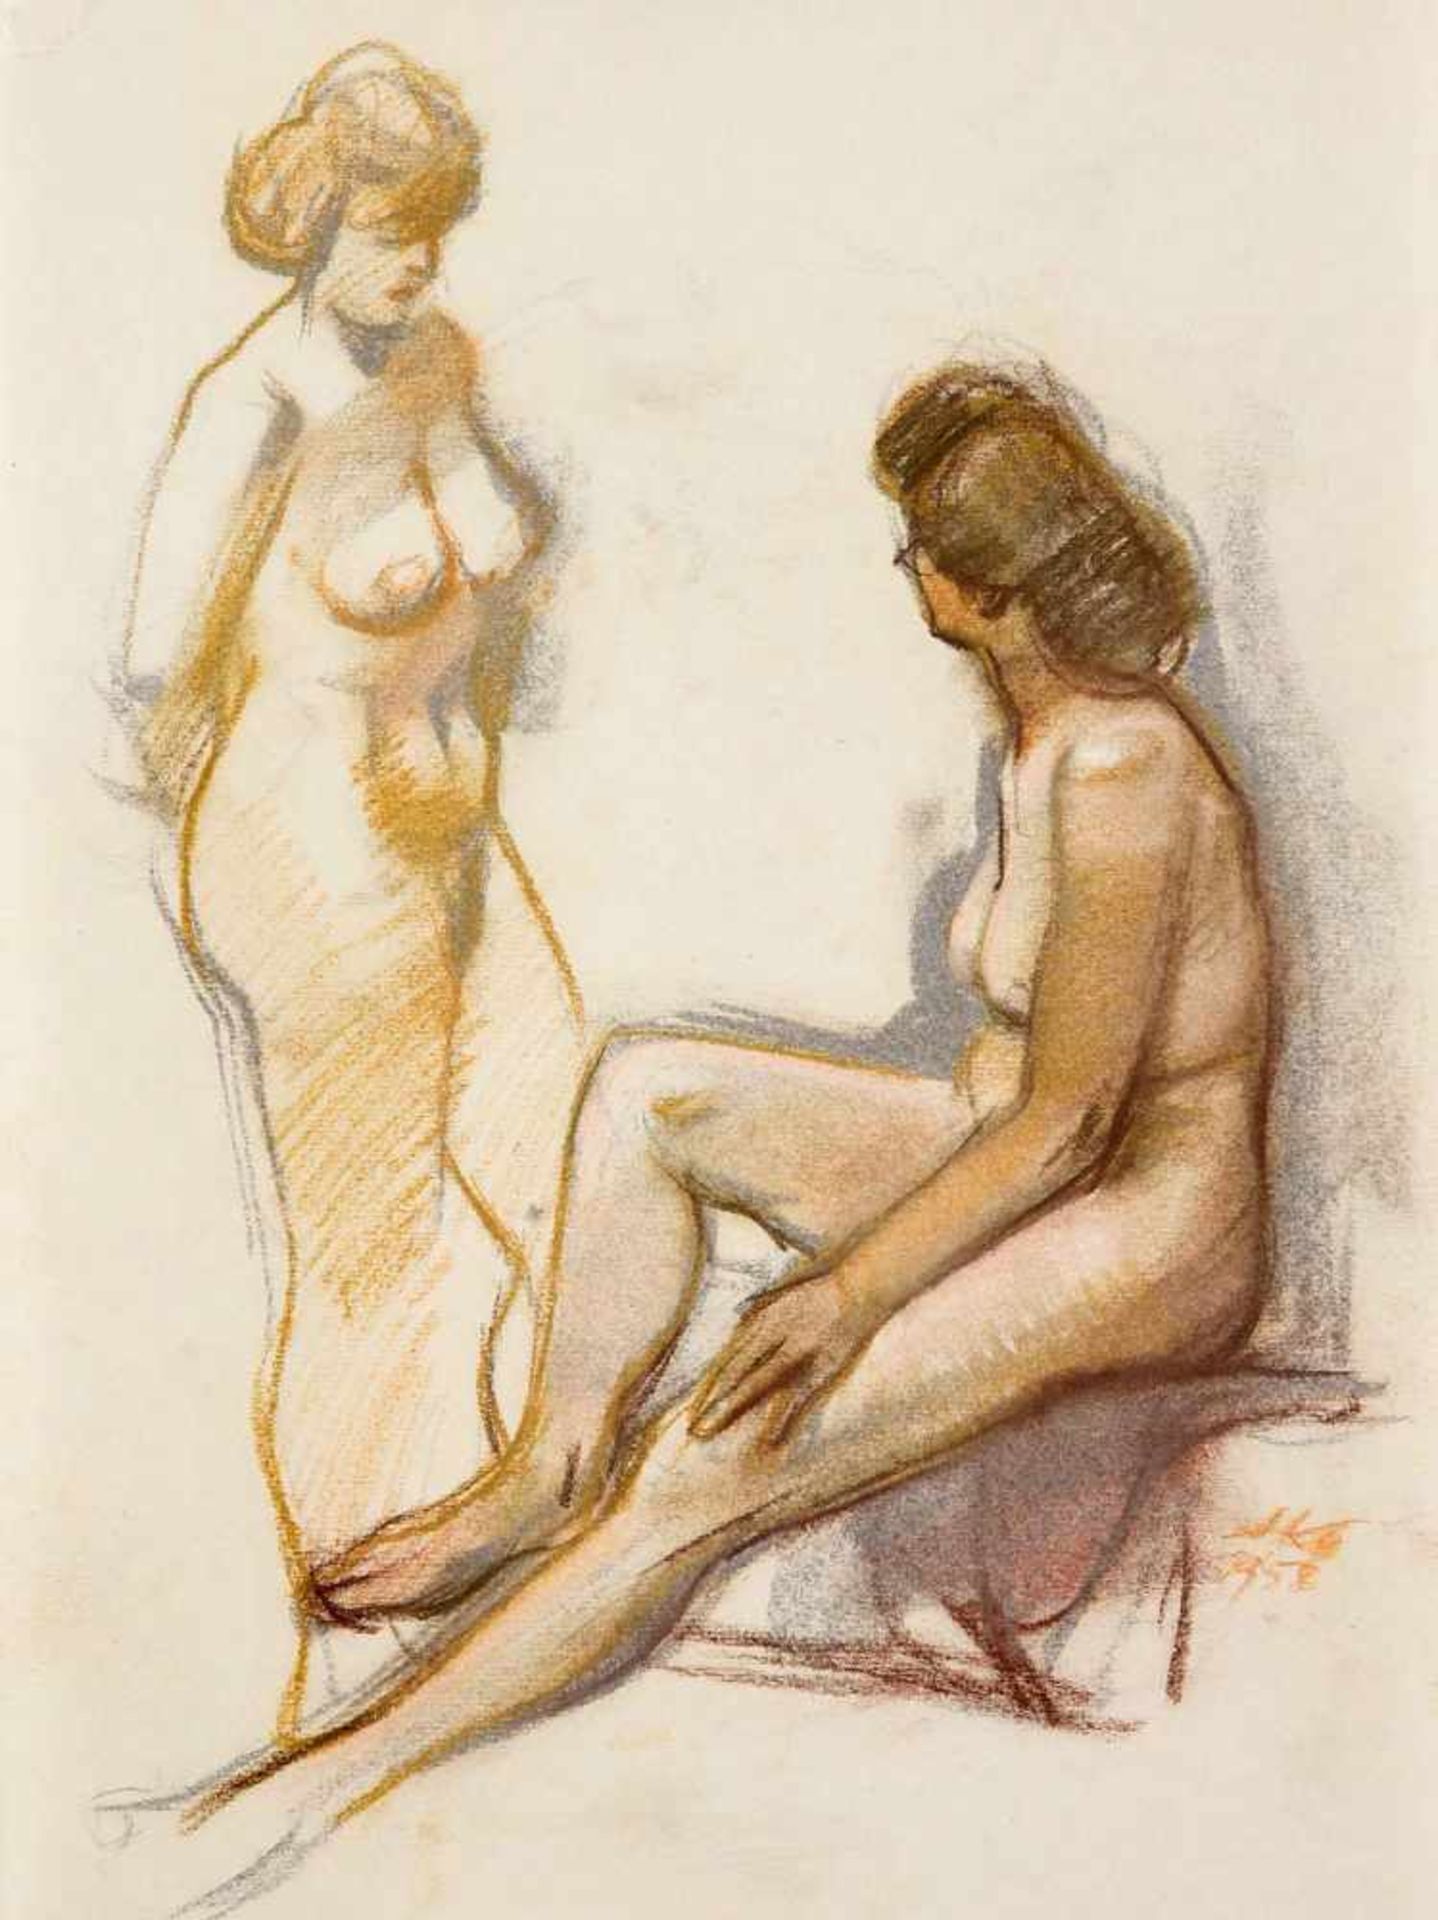 Hermann Kohlmann (1907-1982), deutscher Maler, Bildhauer und Grafiker, war Schüler an derDresdner